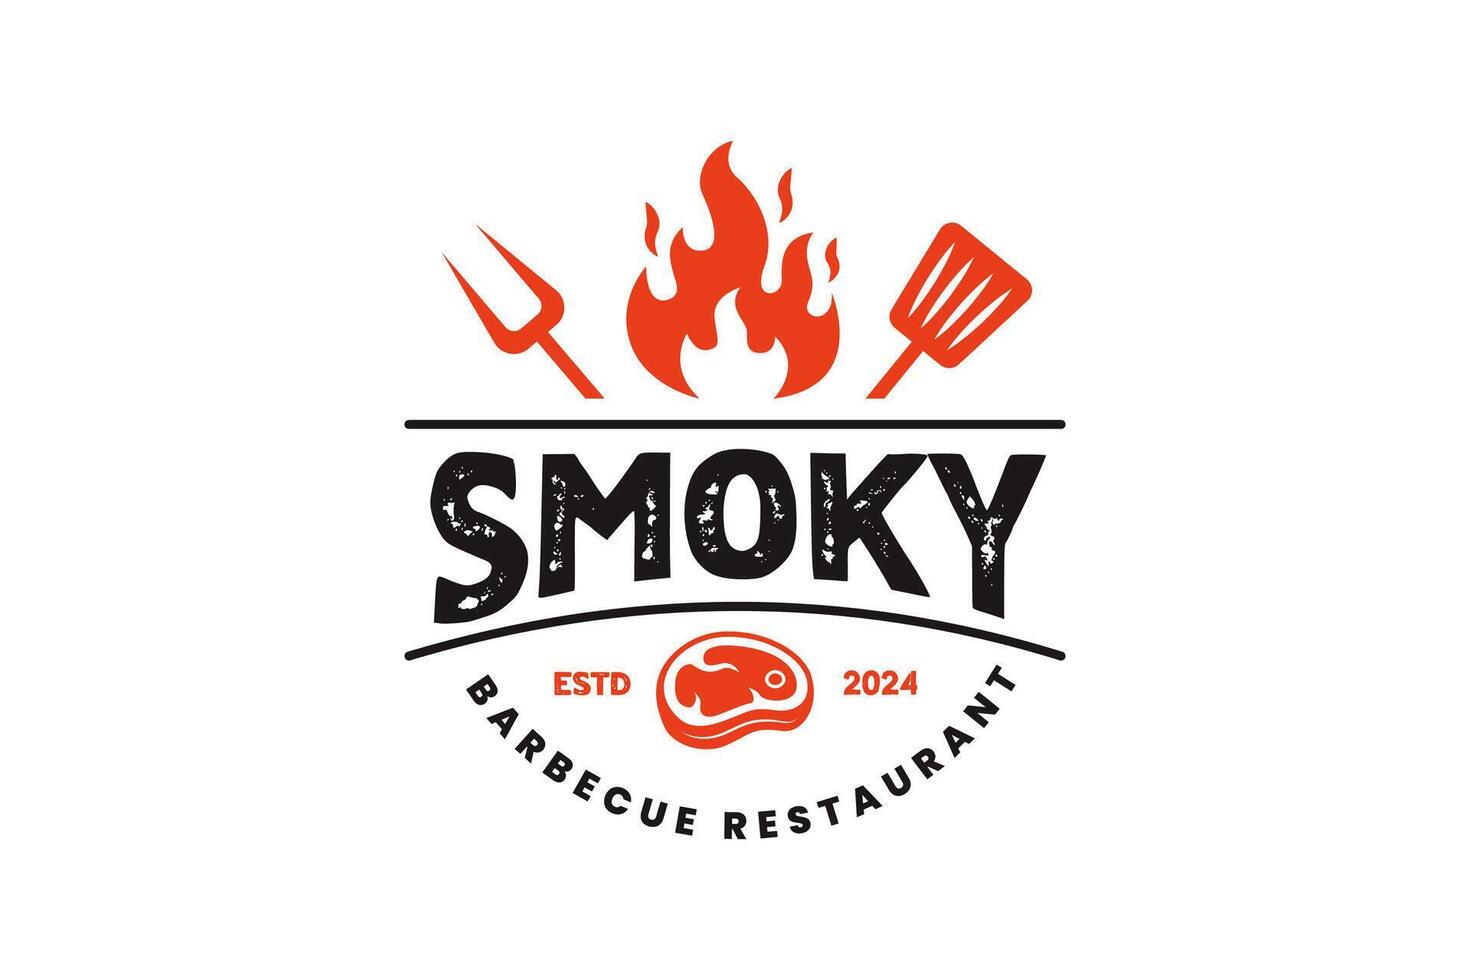 rustique un barbecue gril logo ou grillé barbecue steak maison badge logo timbre dans ancien rétro style vecteur